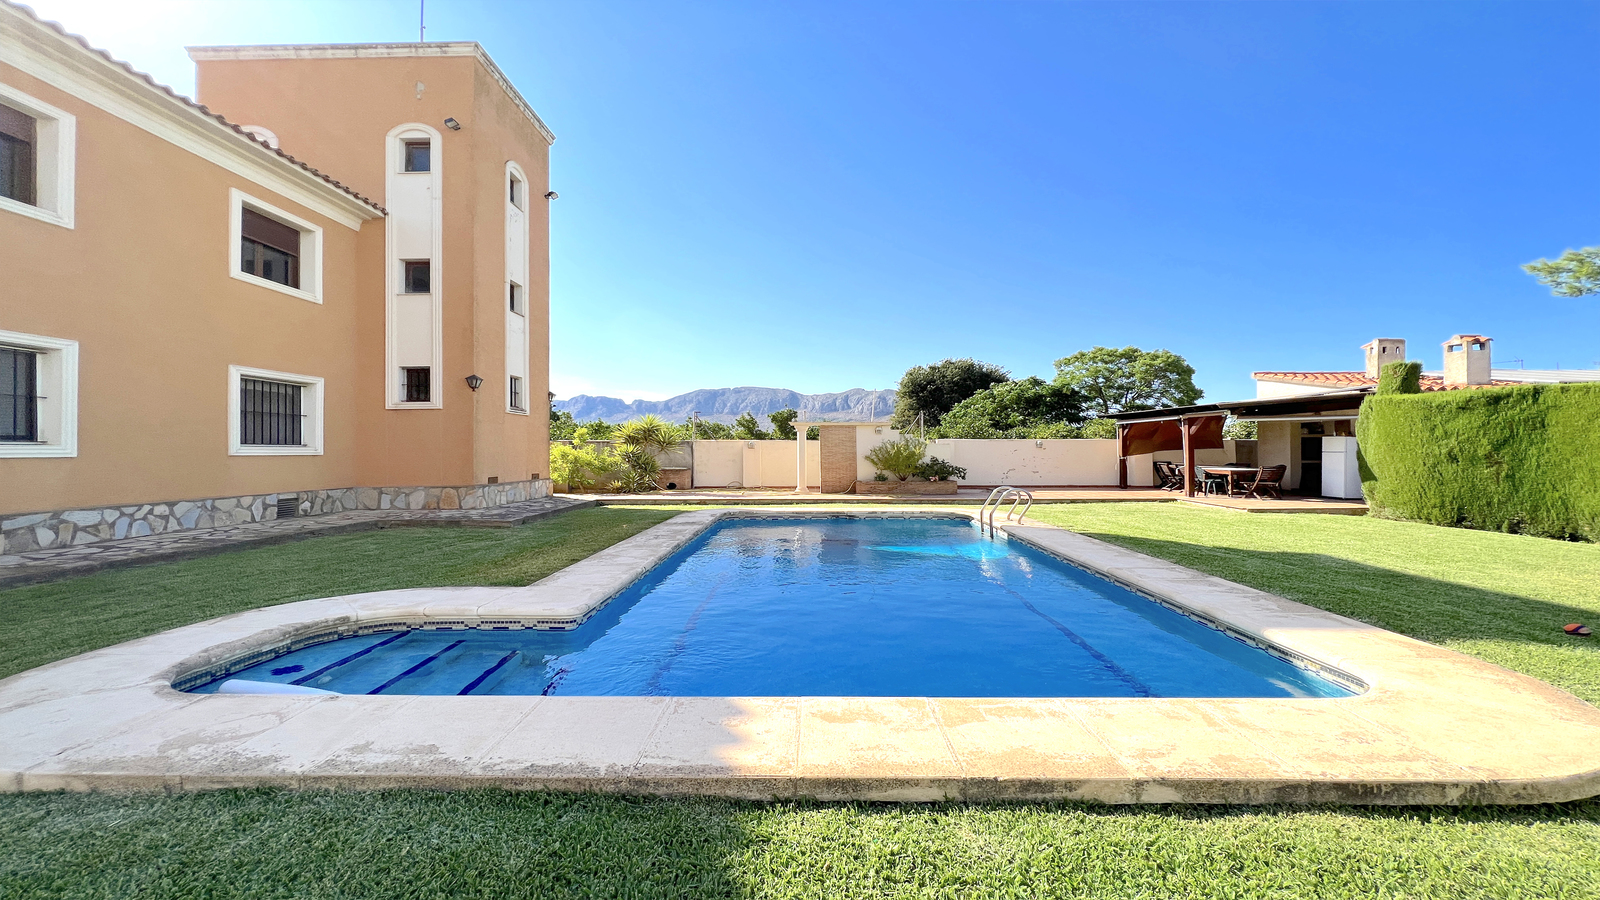 Villa met 4 slaapkamers, XXL groot zonneterras, groot zwembad, BBQ huis met een zomerkeuken, tuin met fruitbomen.